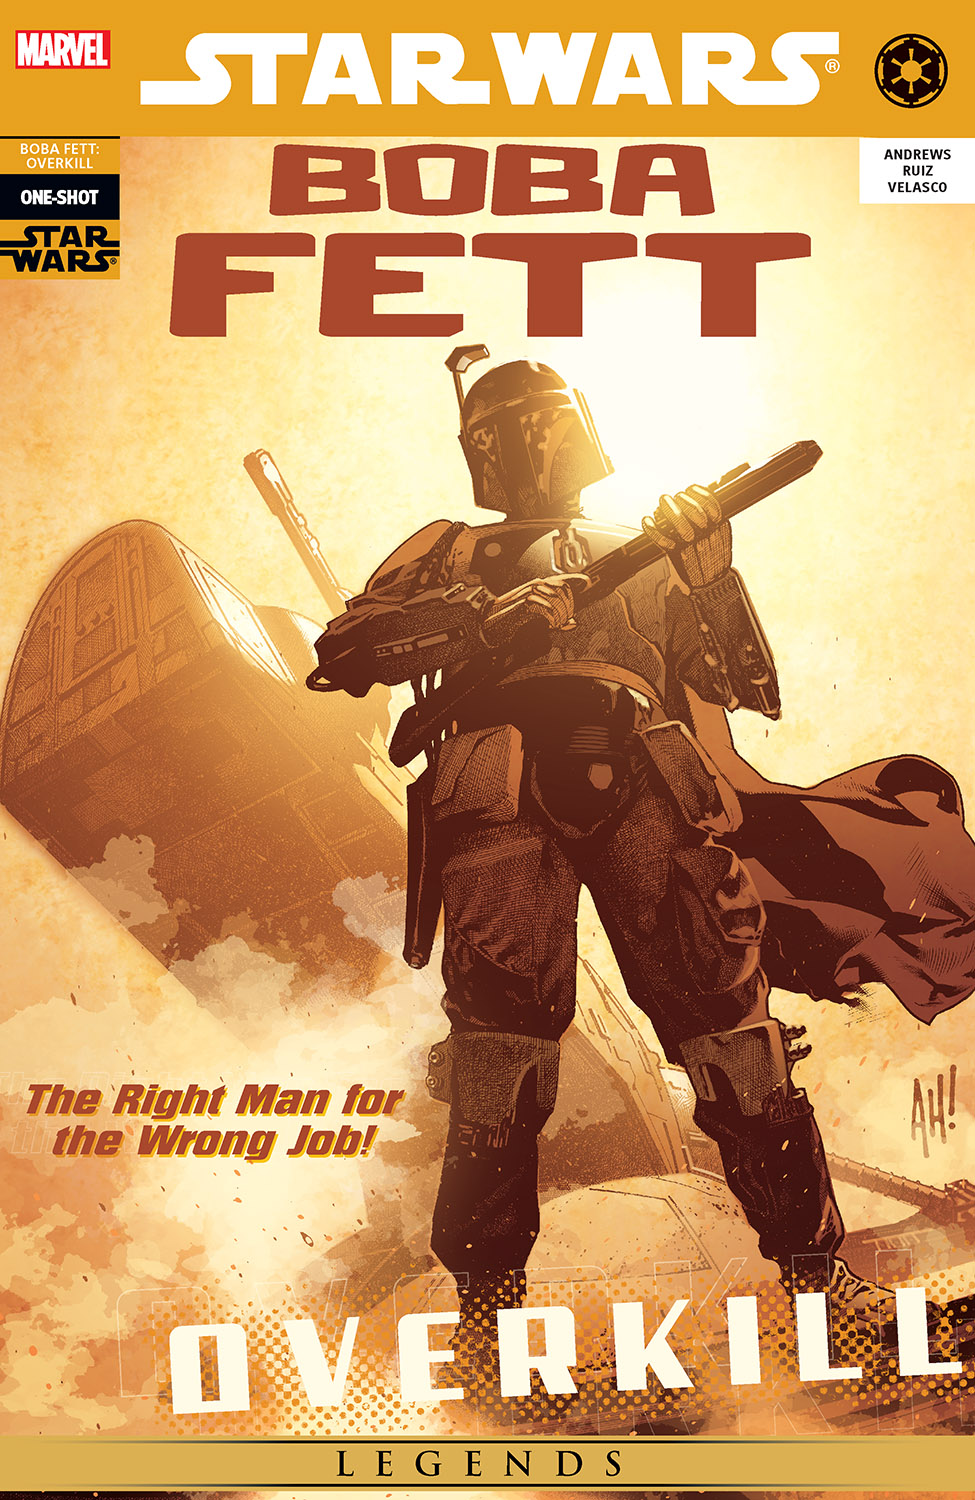 Star Wars: Boba Fett - Overkill (2006) #1